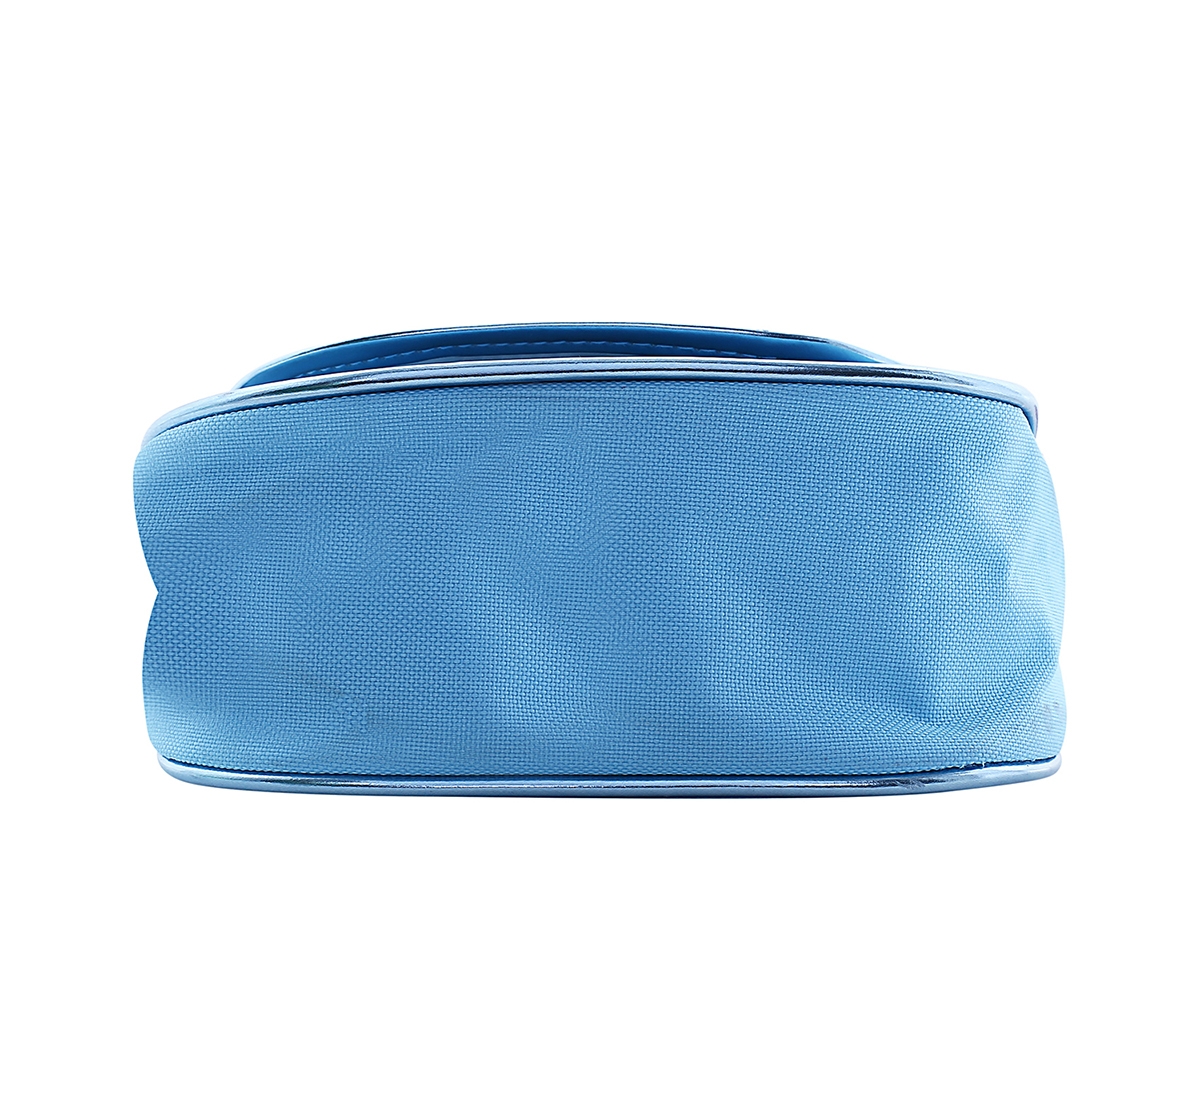 DISNEY | Disney Simba Color Me Mine Spring Sequin Bag - Frozen, Blue DIY Art & Craft Kits for Kids age 6Y+ 3